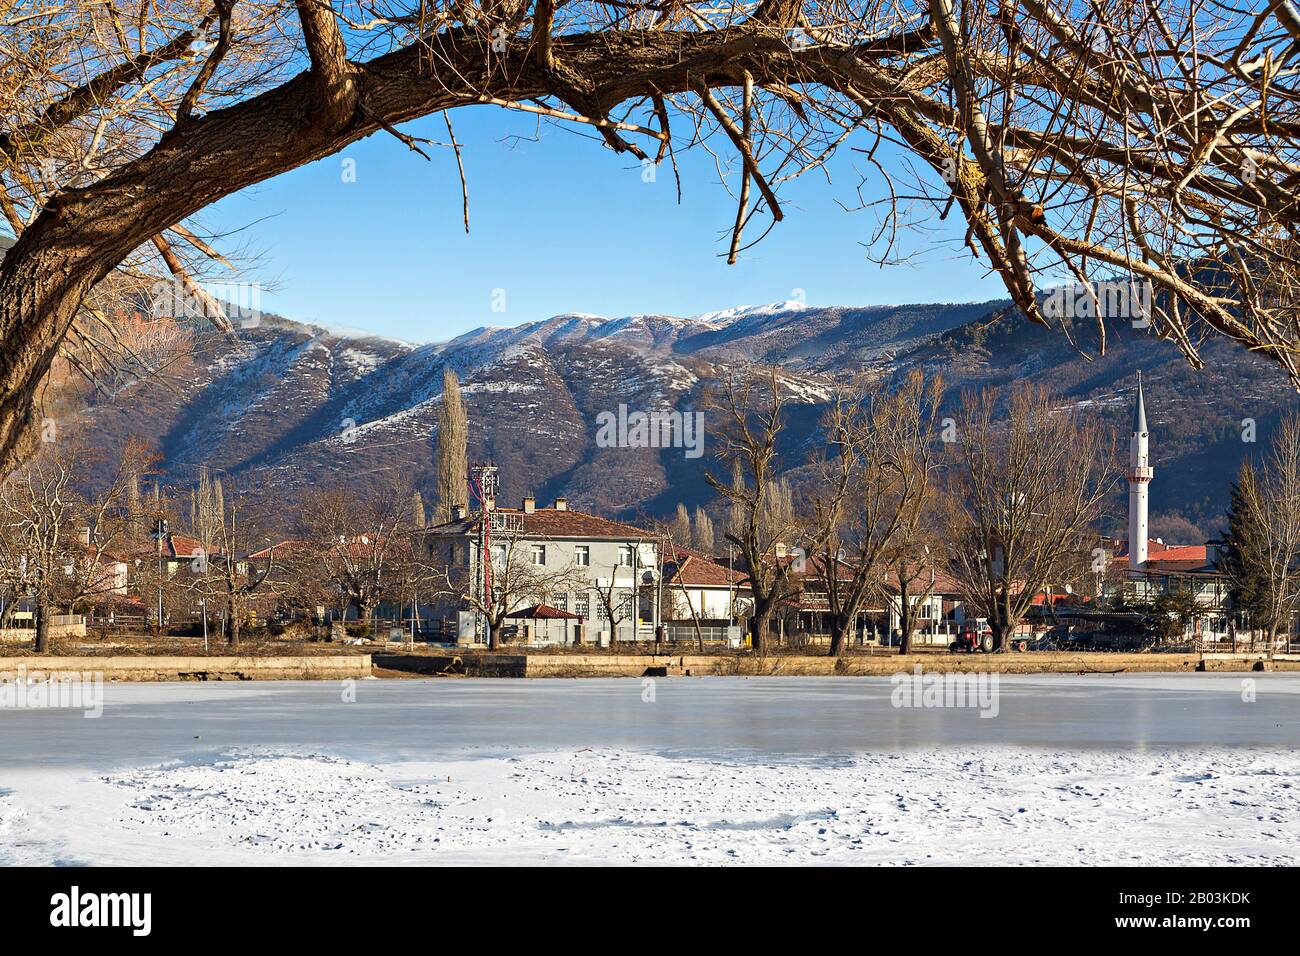 Blick auf das Dorf Golcuk und den zugefrorenen See in der Nähe der Städte Birgi und Odemis in der Provinz Izmir, Türkei Stockfoto